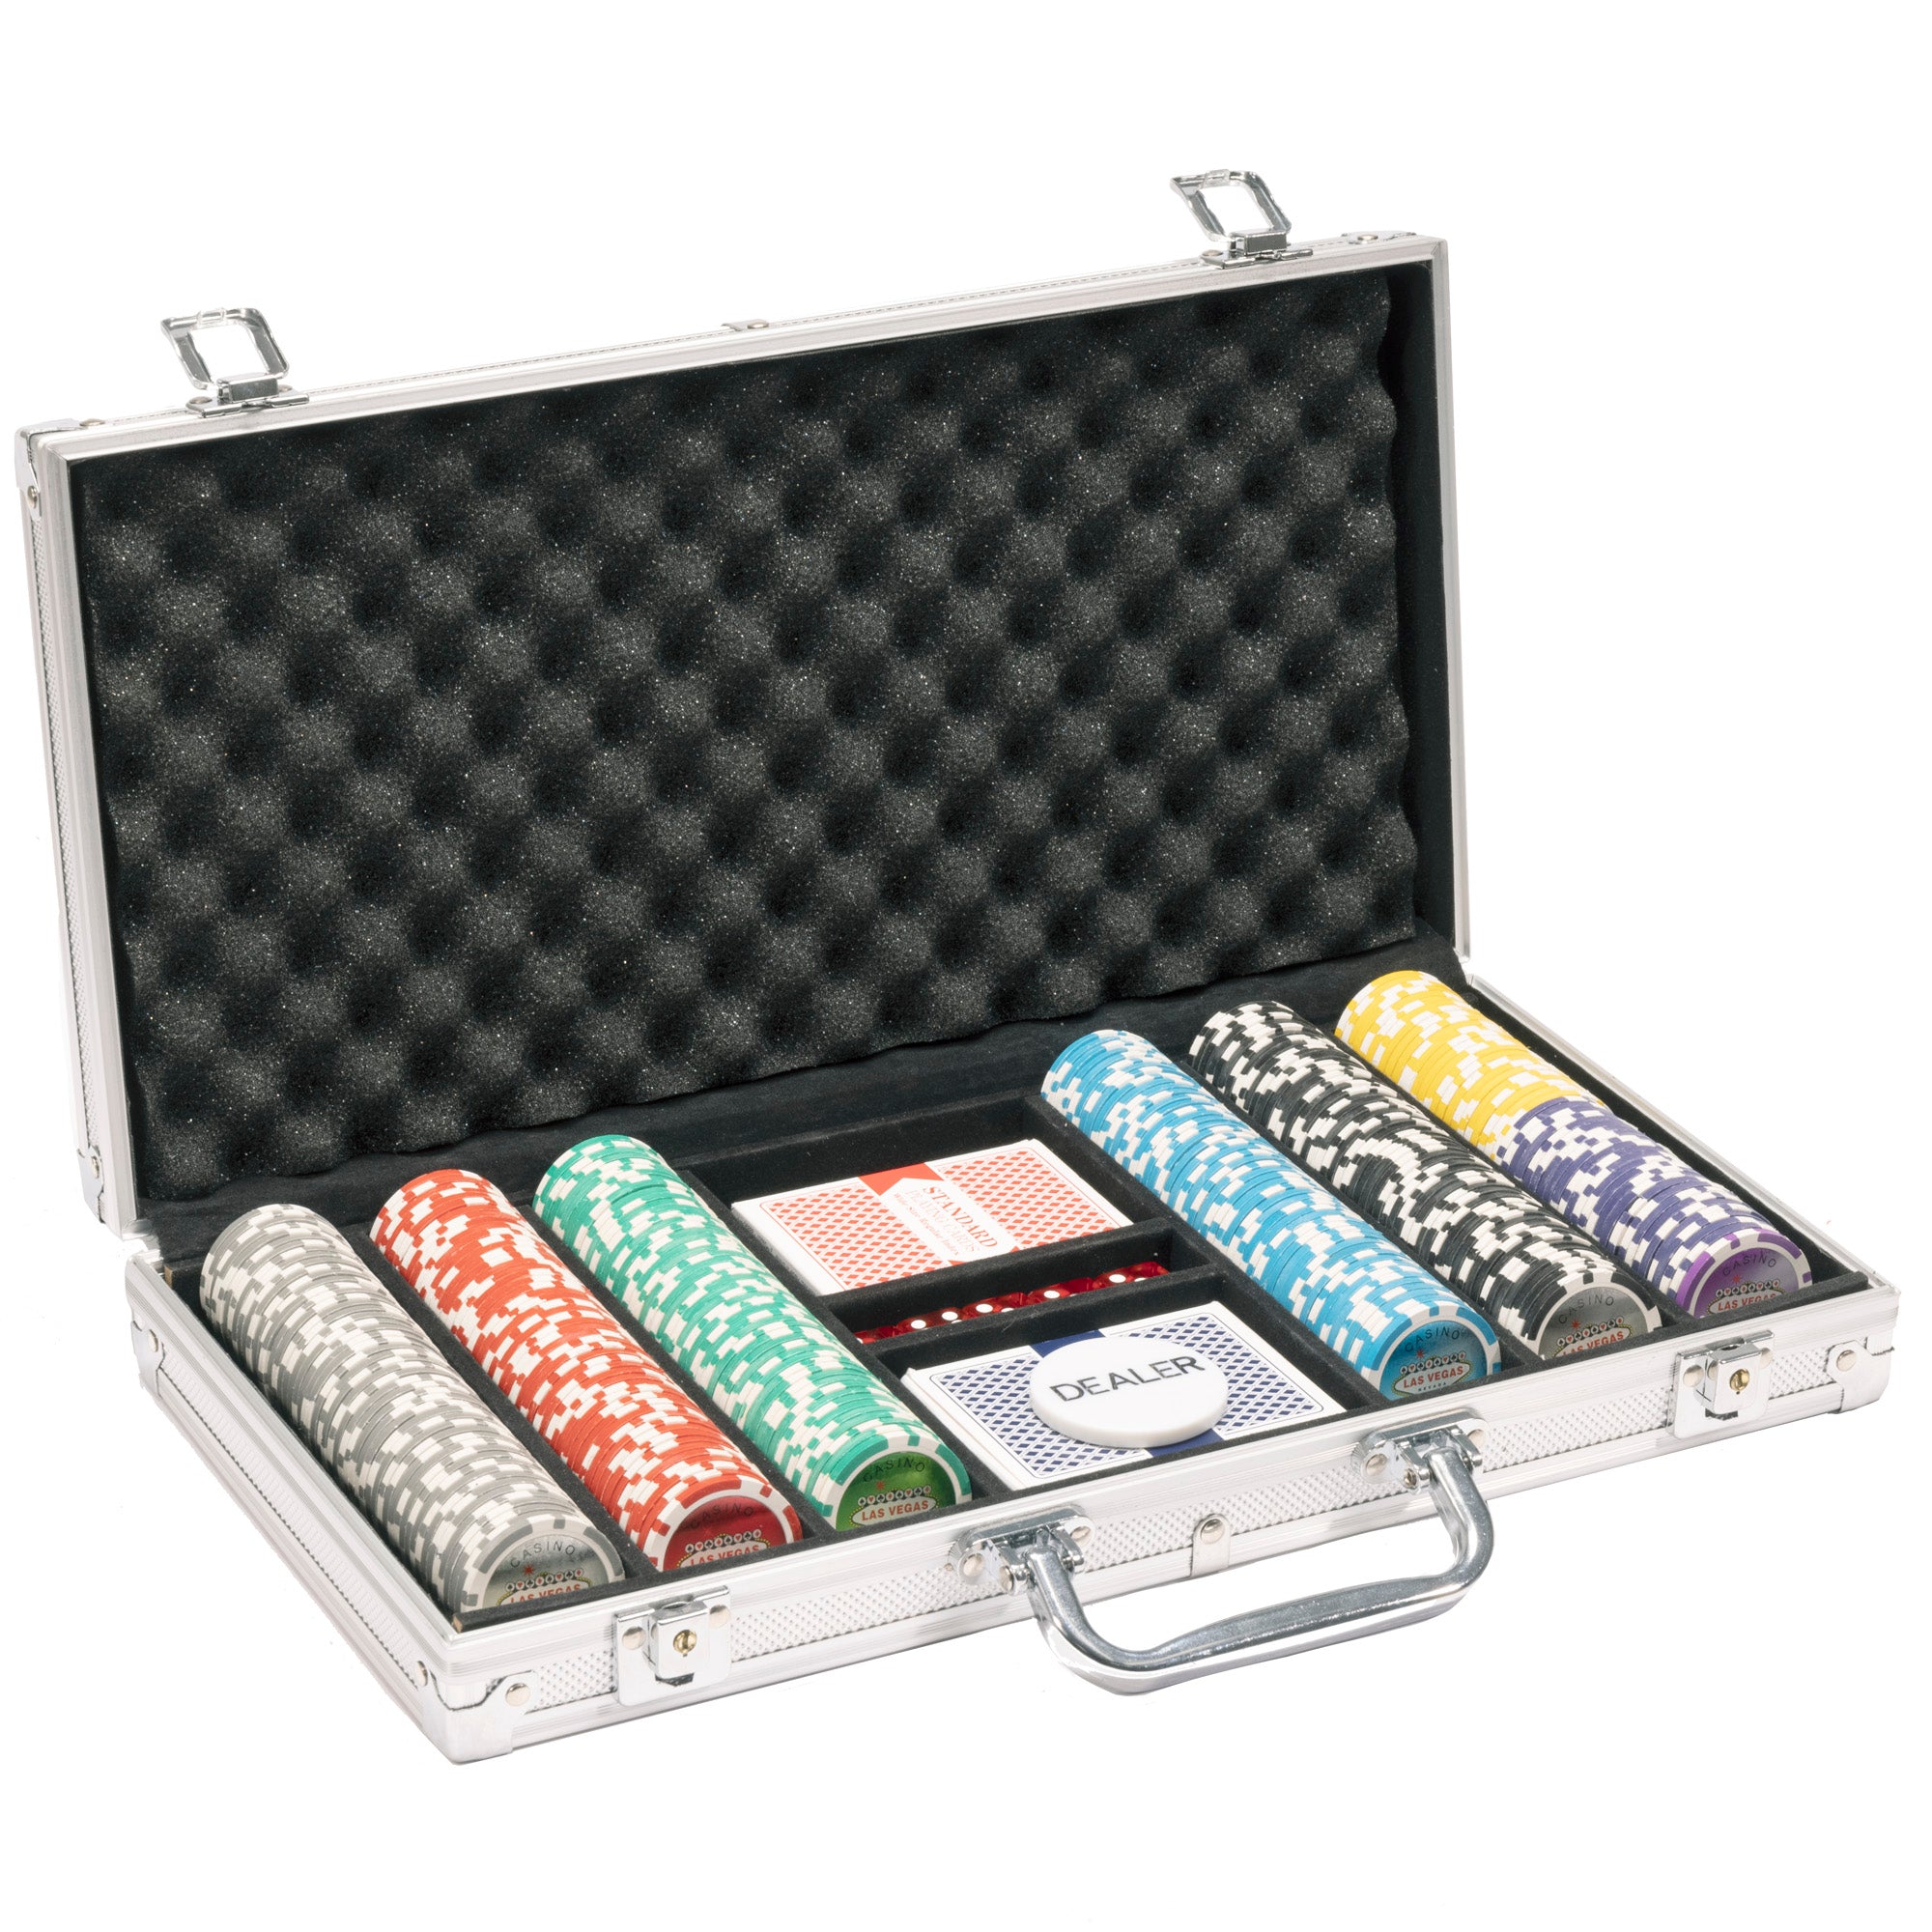 Las Vegas 14-gram Poker Chip Set in Aluminum Case (300 Count) - Clay Composite